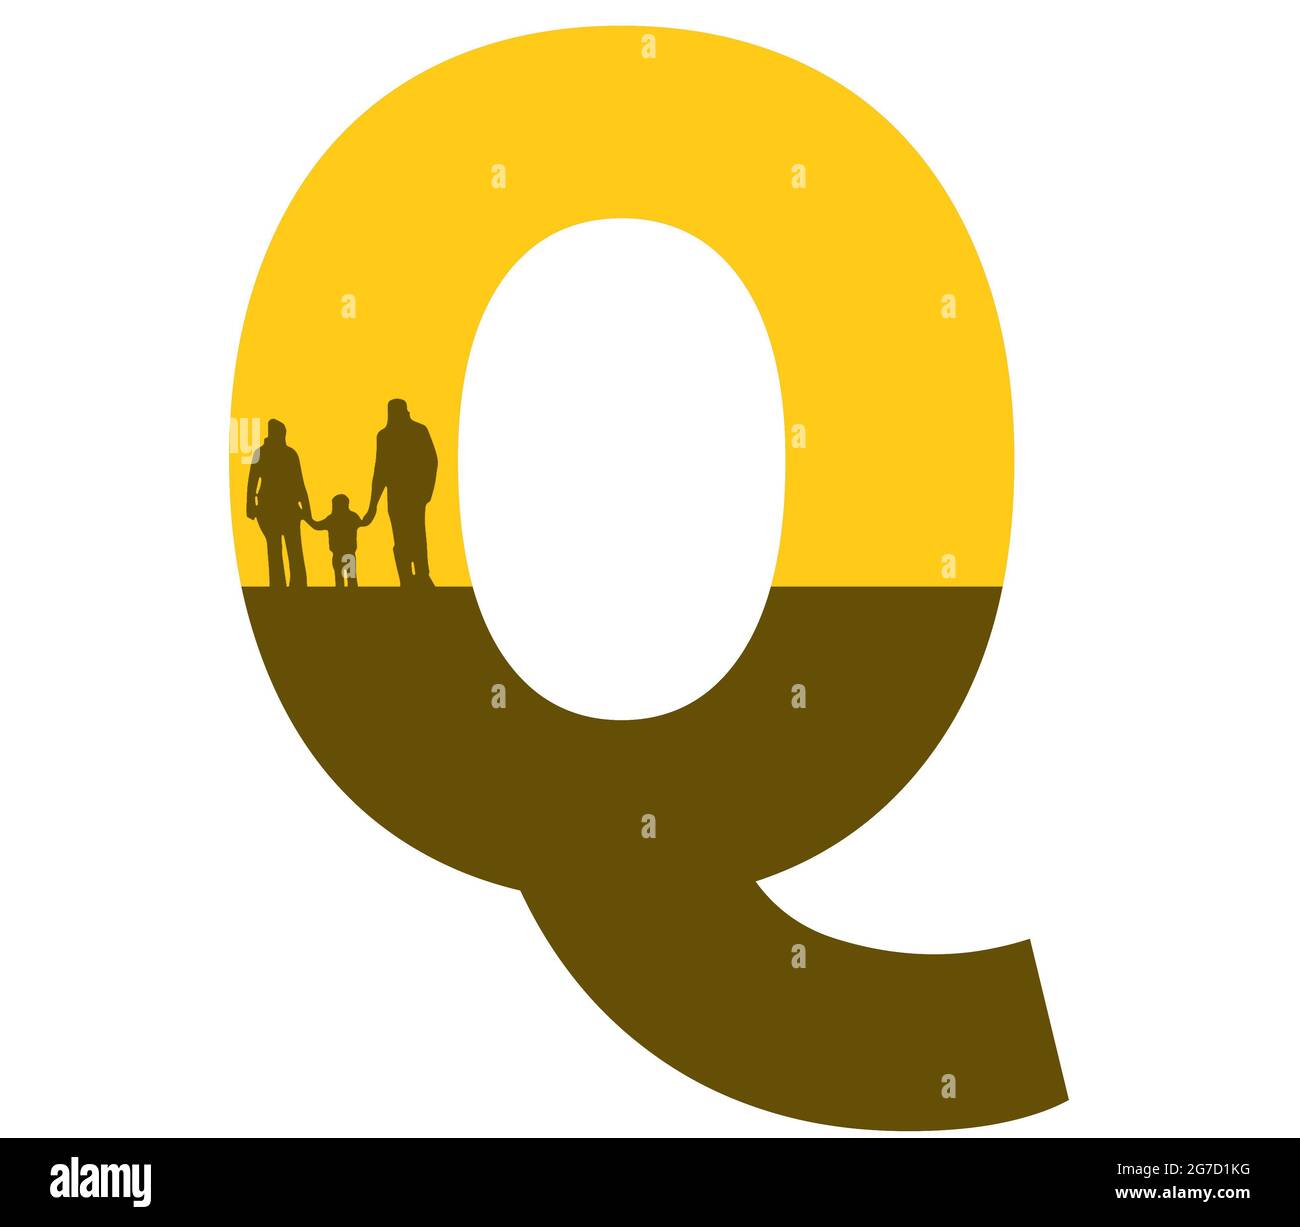 Lettre Q de l'alphabet avec une silhouette de famille, de père, de mère et d'enfant, de couleur ocre et marron Banque D'Images